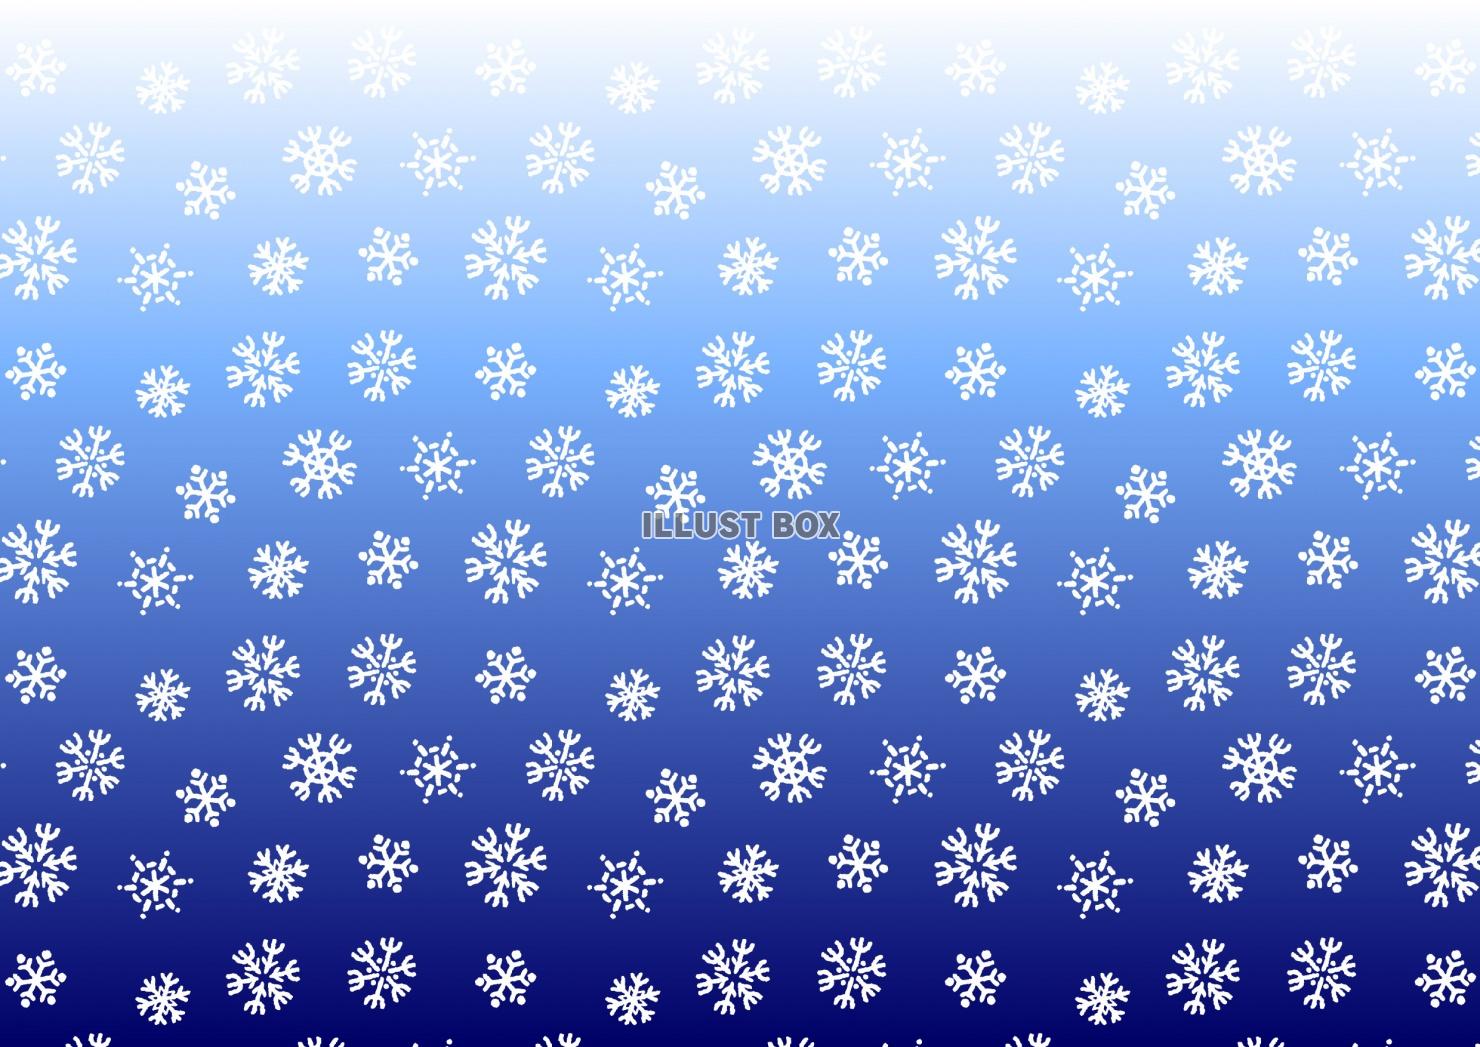 雪の結晶パターン（PNGは白い雪のみ・背景透過）